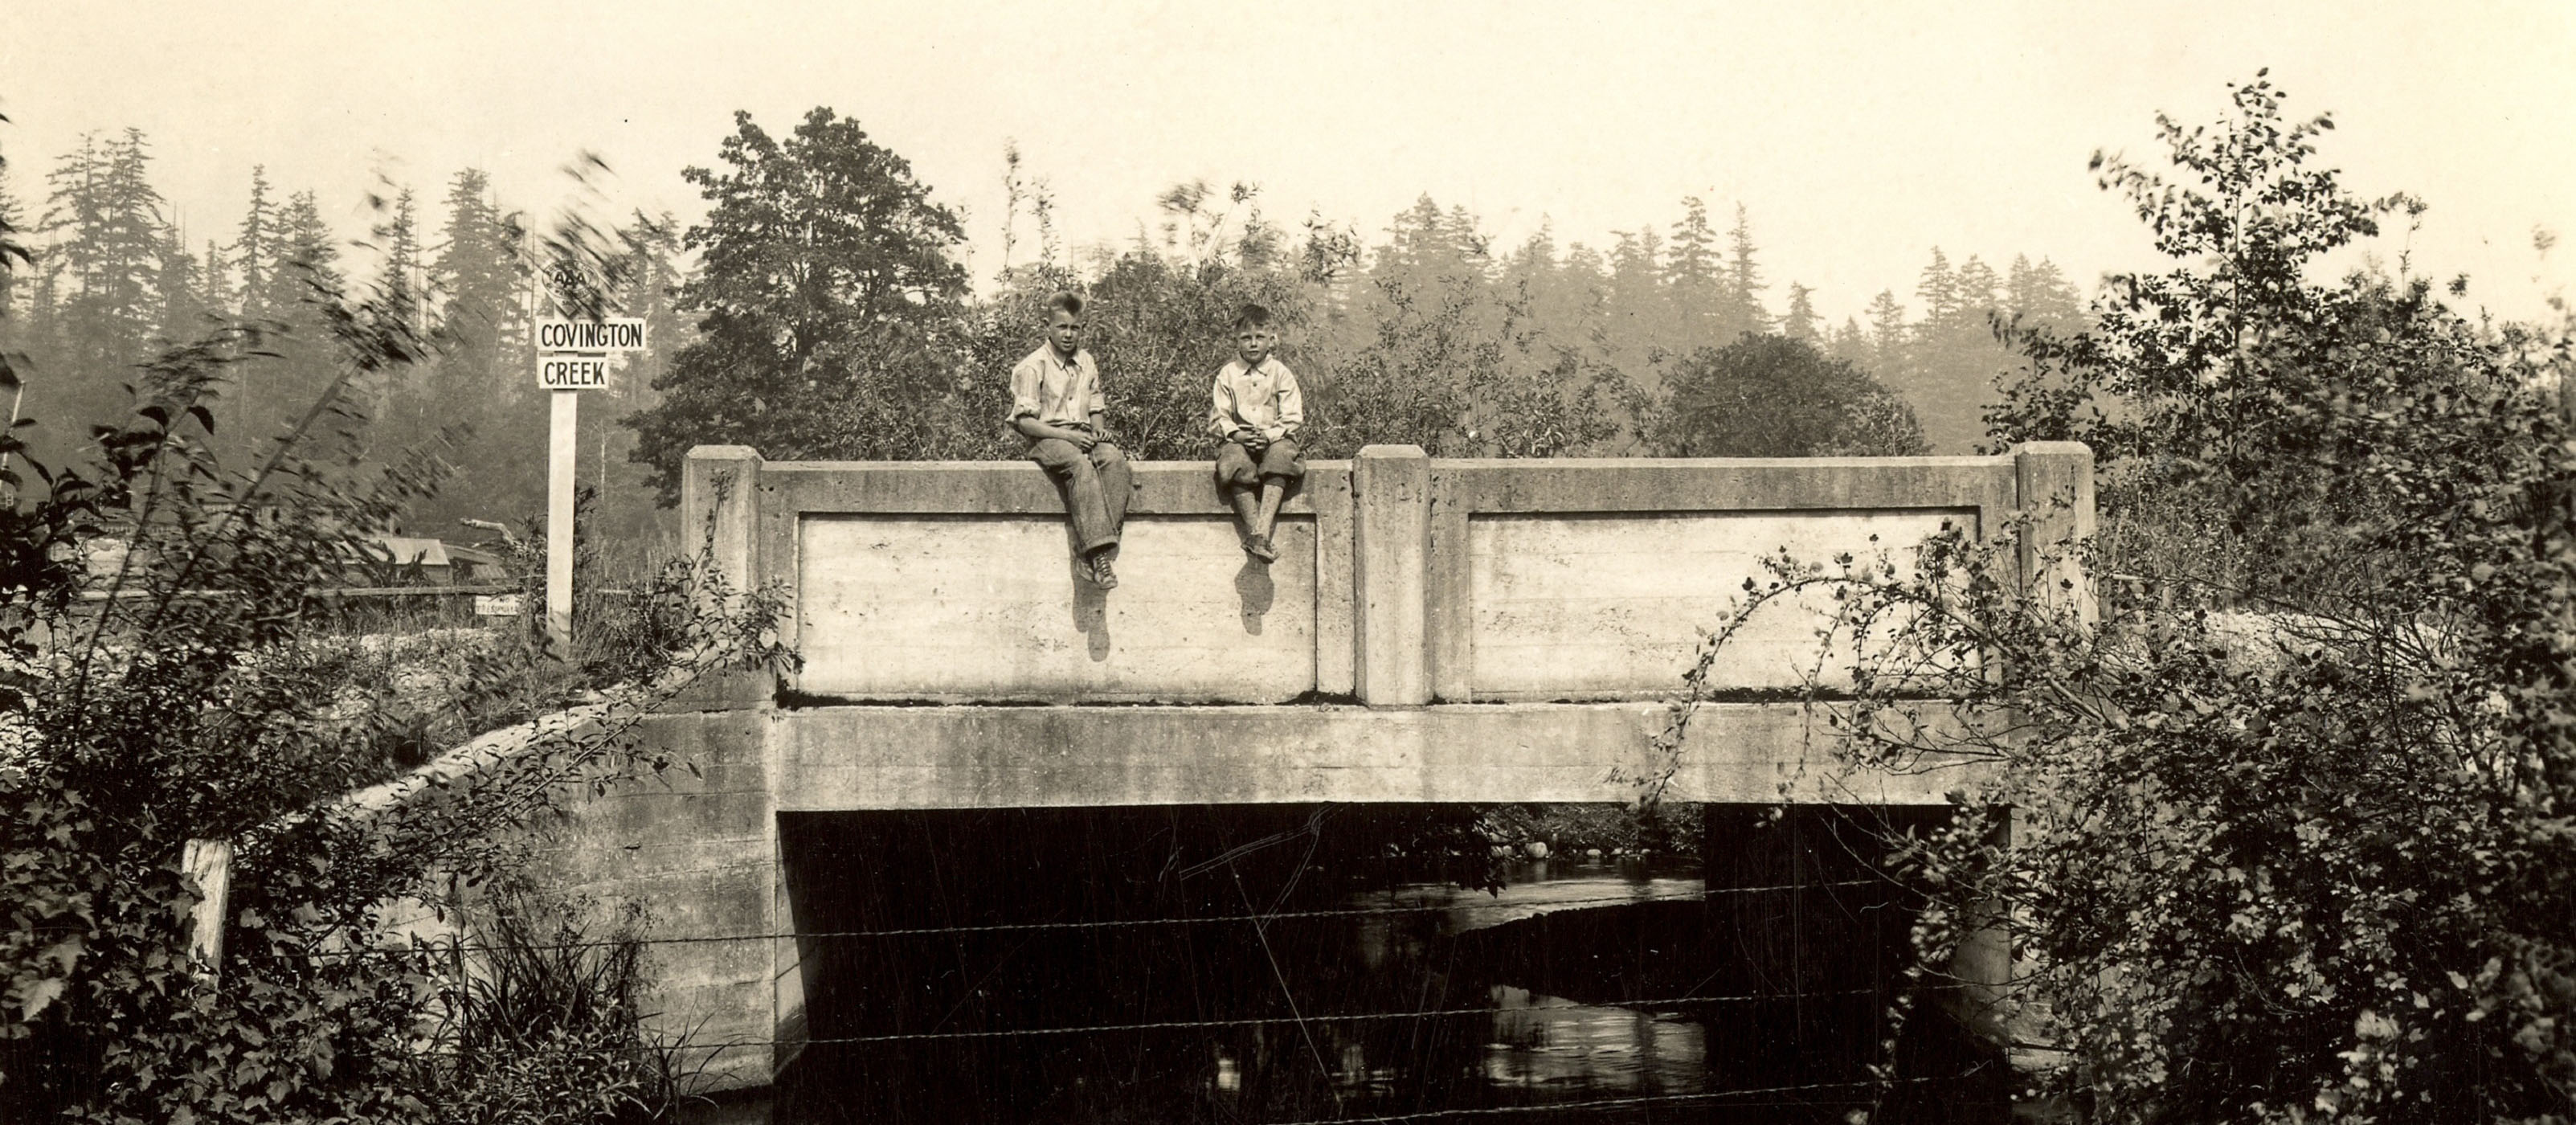 Two boys sitting on the edge of a concrete bridge